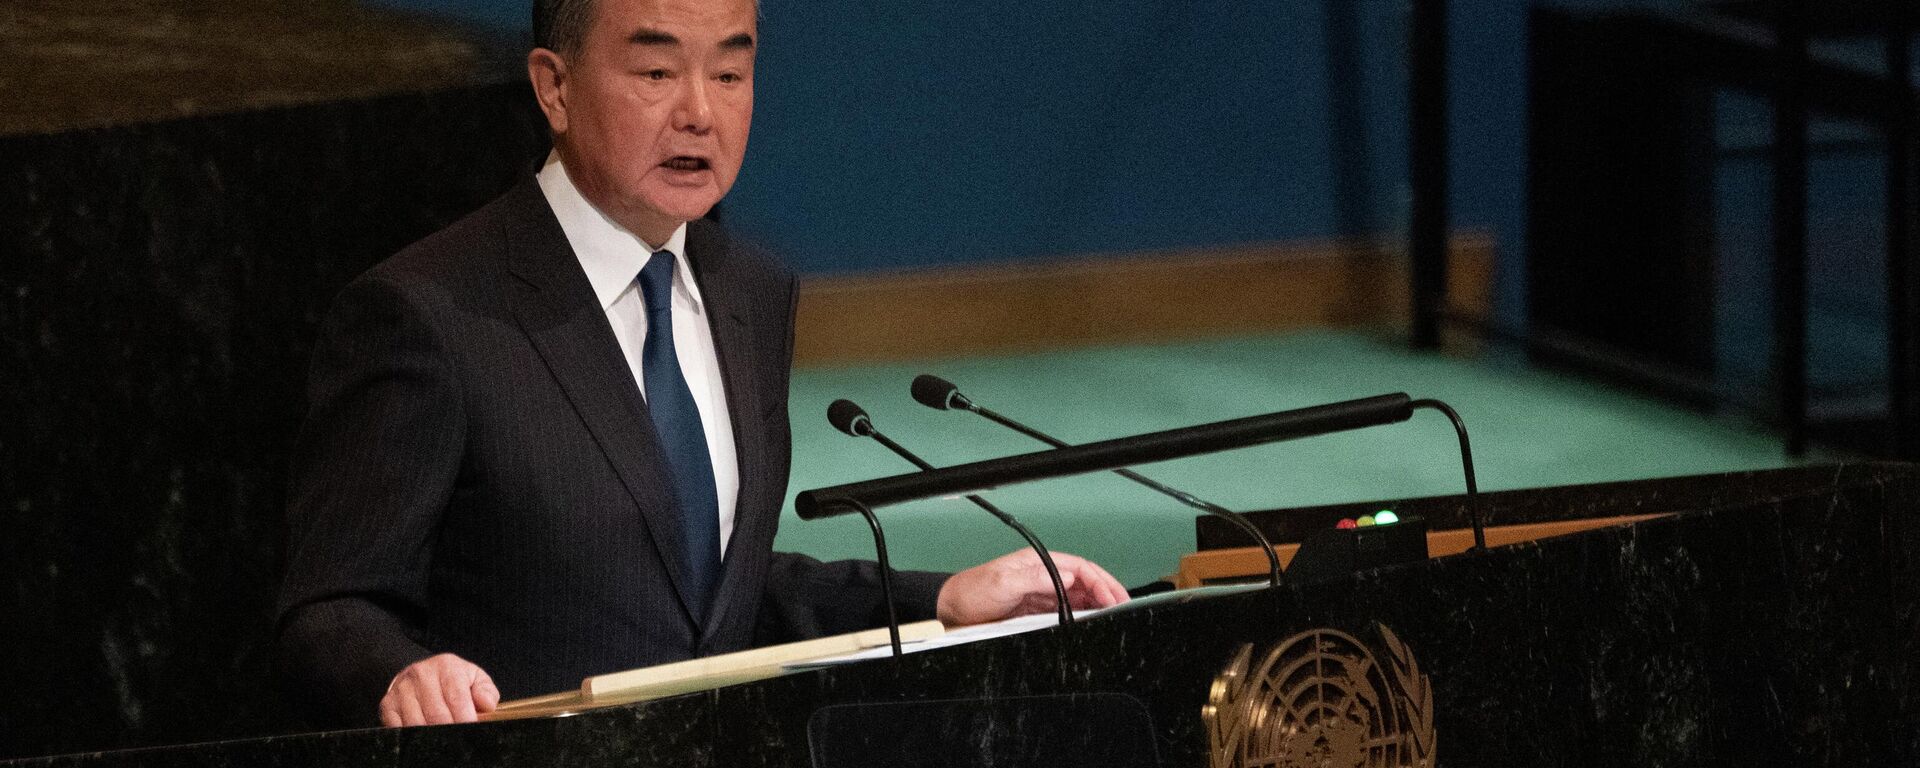 O ministro das Relações Exteriores da China, Wang Yi, discursa na 77ª sessão da Assembleia Geral das Nações Unidas na sede da ONU em Nova York em 24 de setembro de 2022 - Sputnik Brasil, 1920, 24.09.2022